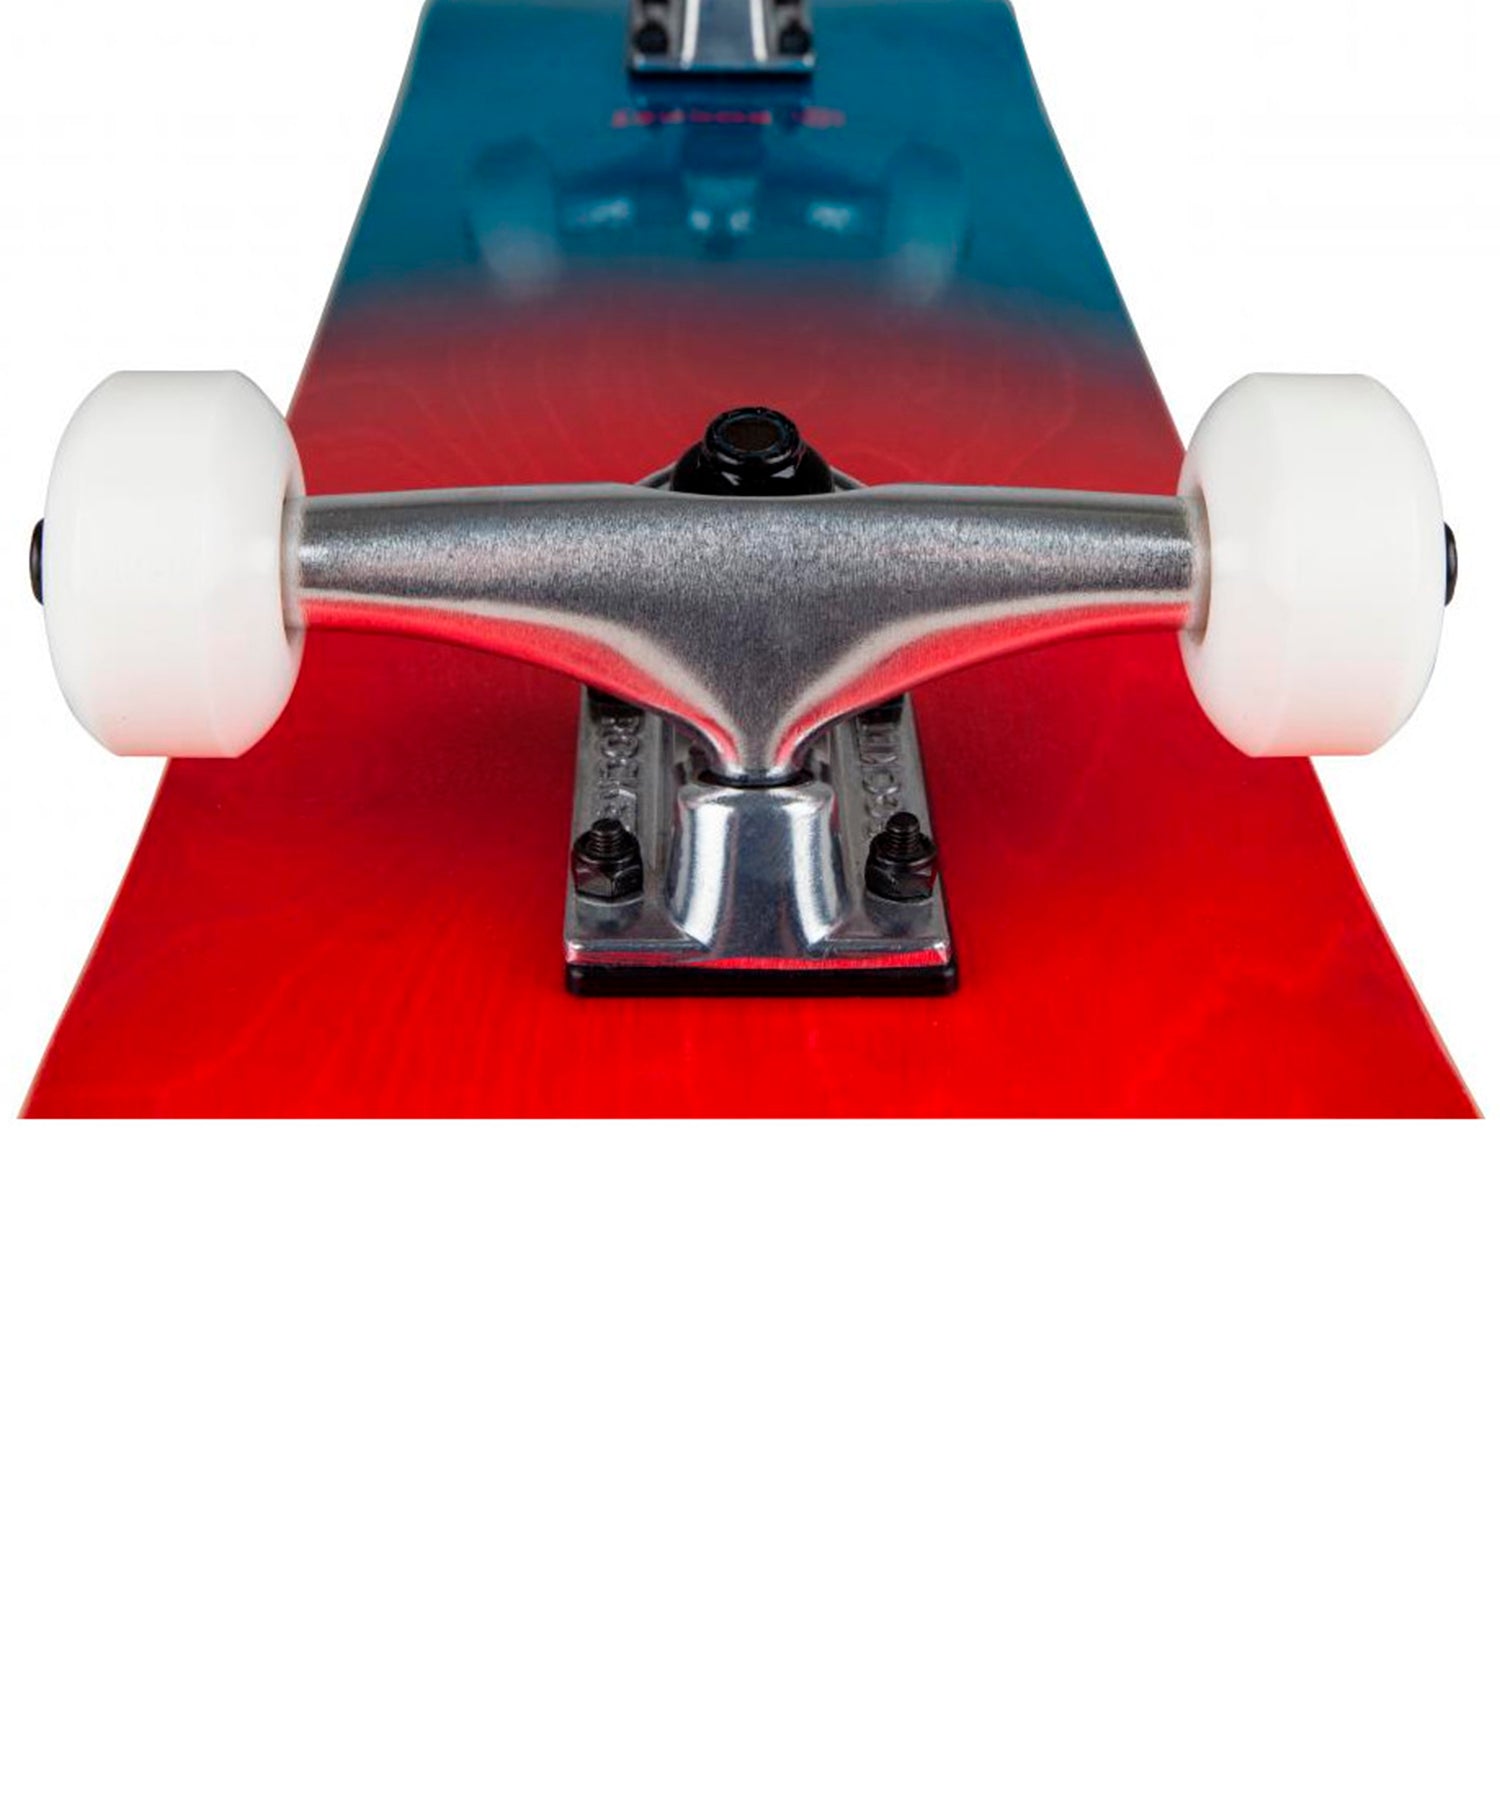 rocket-skateboard-completo-double-dipped-7.5-pulgadas,color-rojo-azul-ideal-para-empezar-a-patinar.